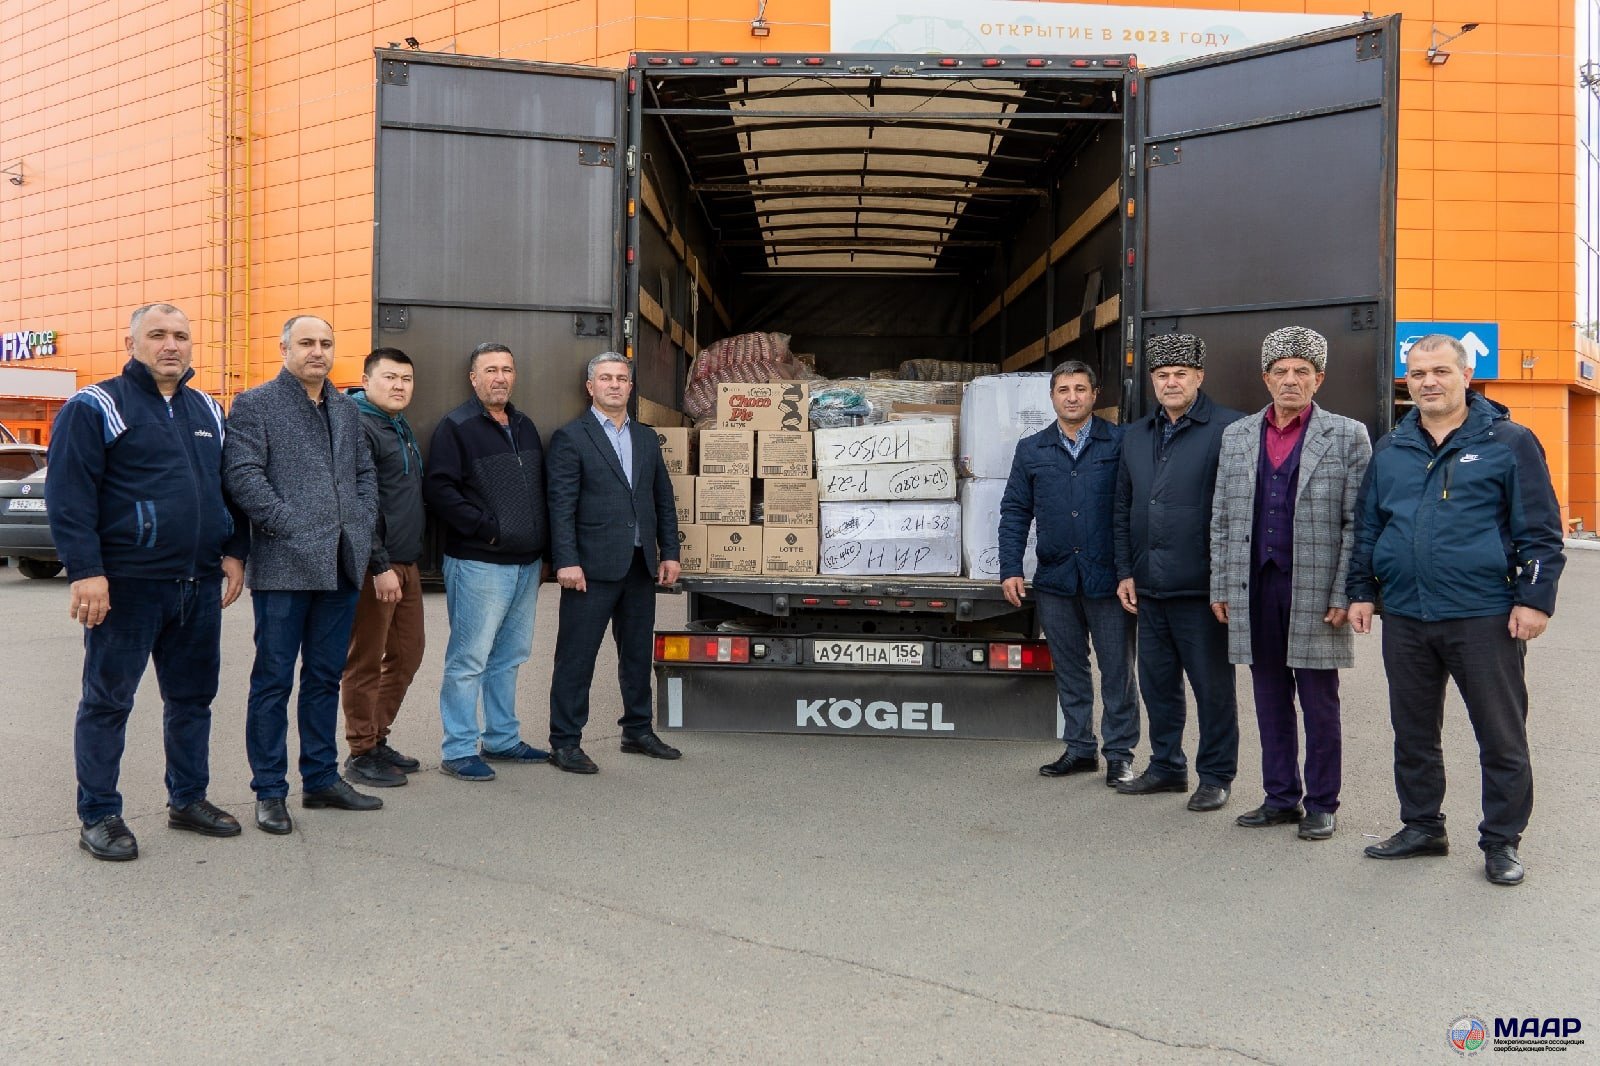 Азербайджанская диаспора Оренбуржья отправила гуманитарную помощь на Донбасс